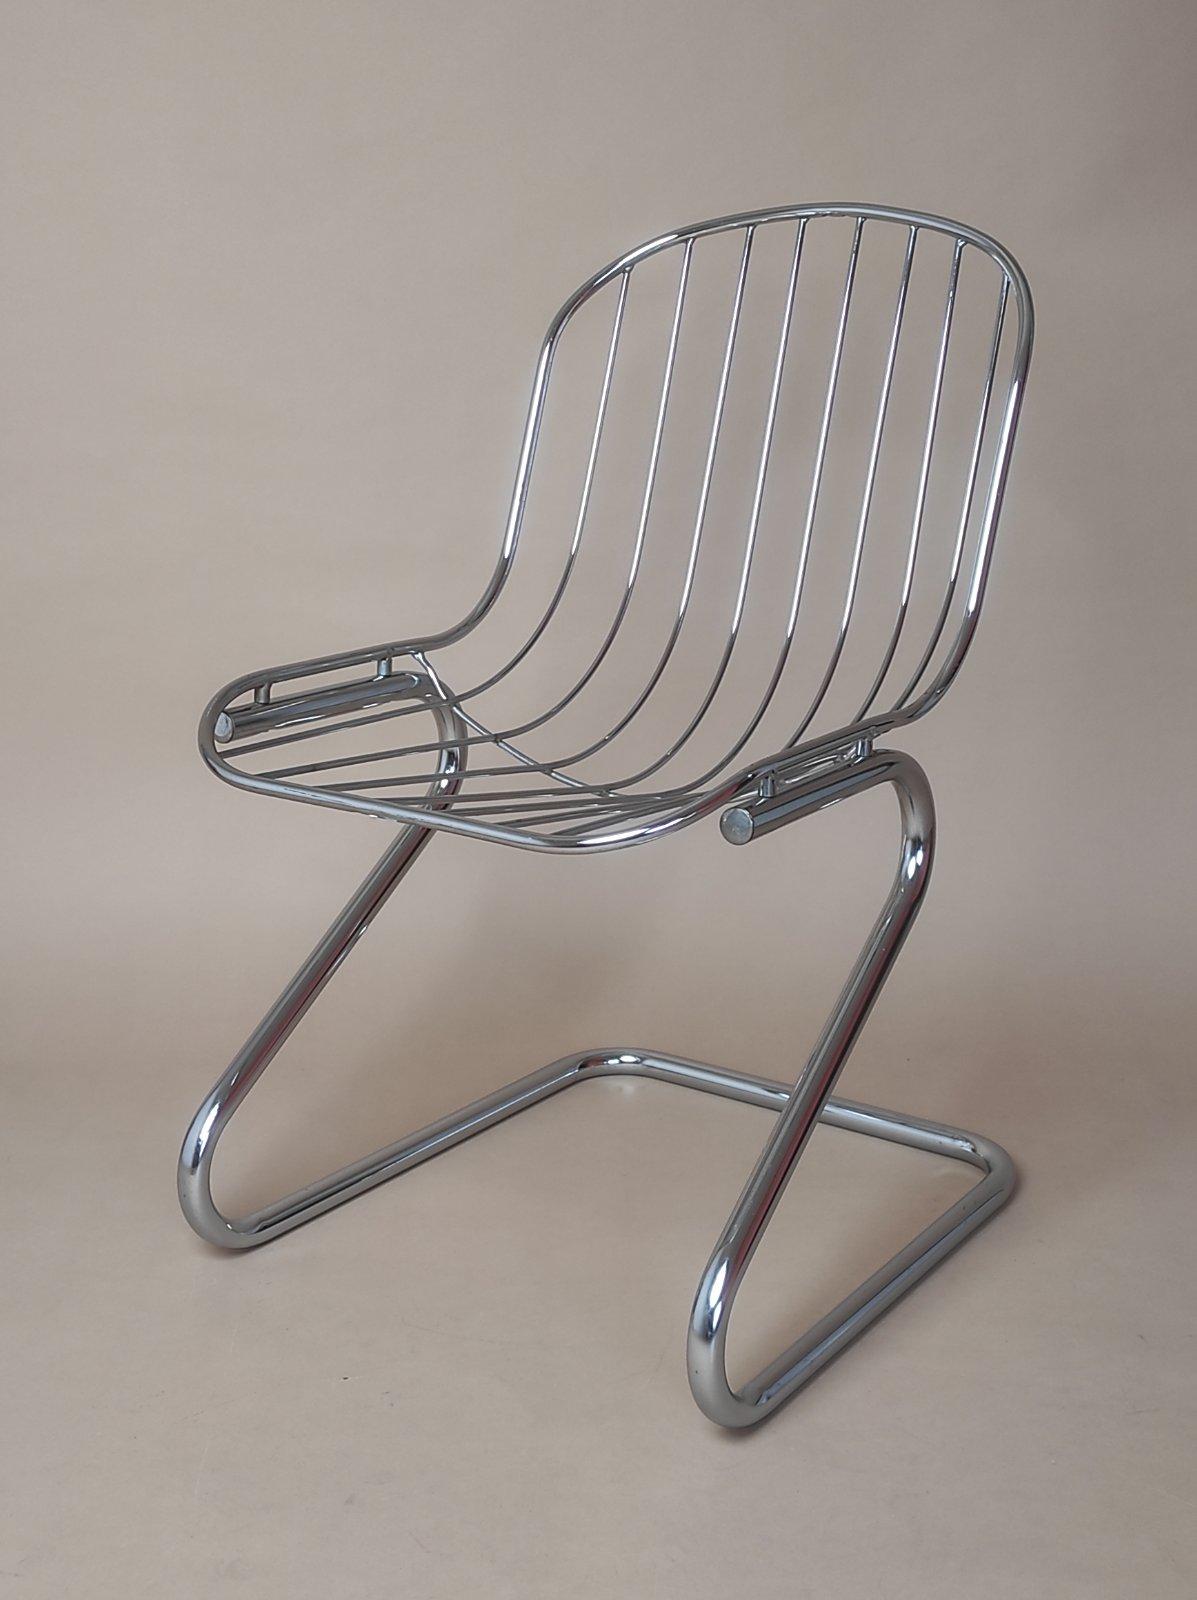 Italian Gastone Rinaldi Chair for Rima 1970s For Sale